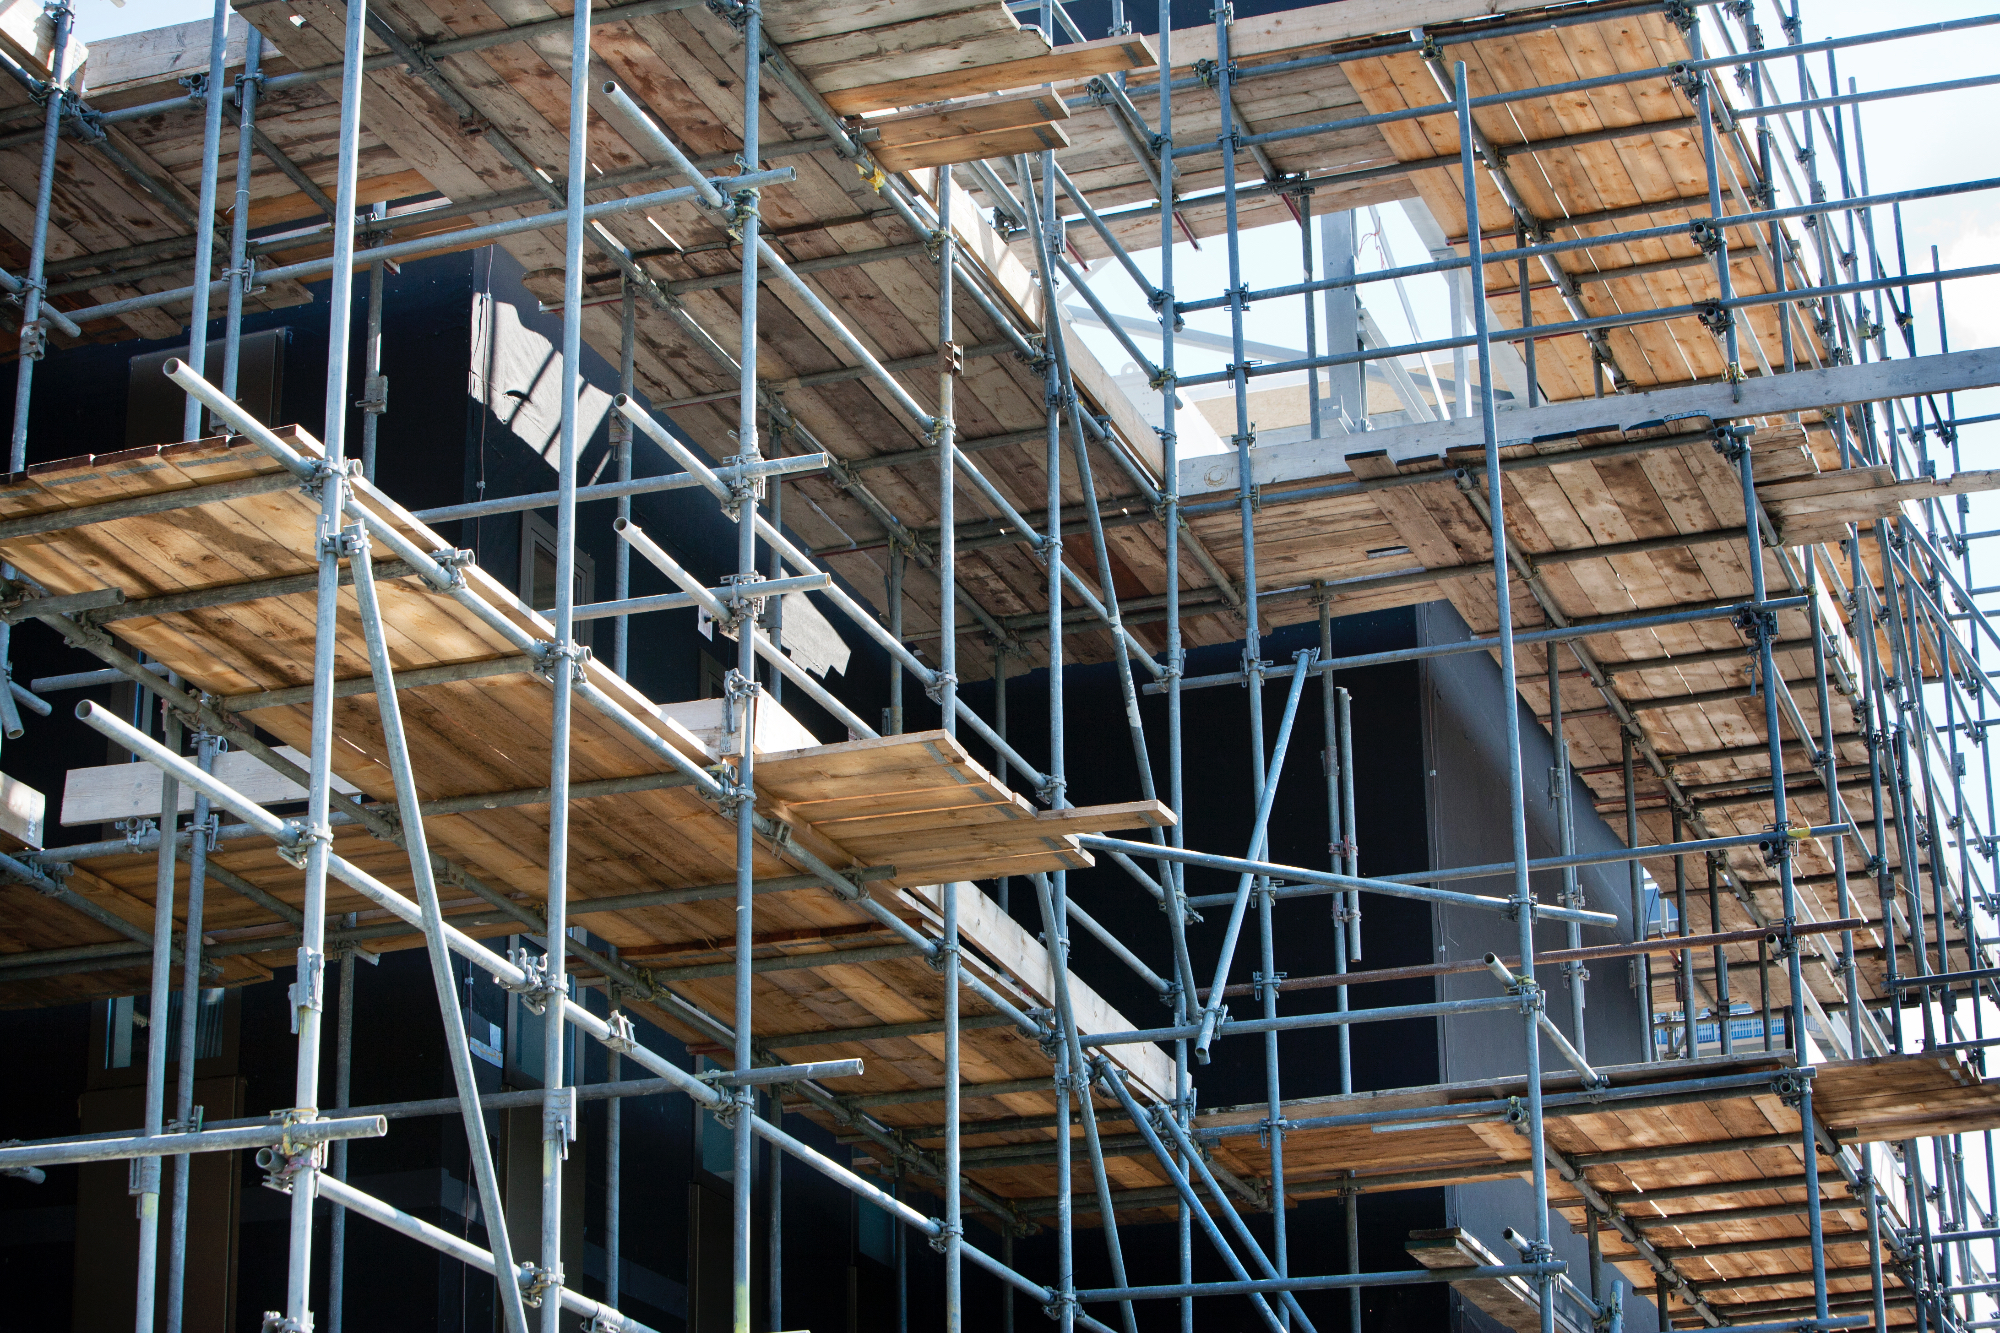 Gradbeni odri so del obvezne opreme za gradbena dela na višini